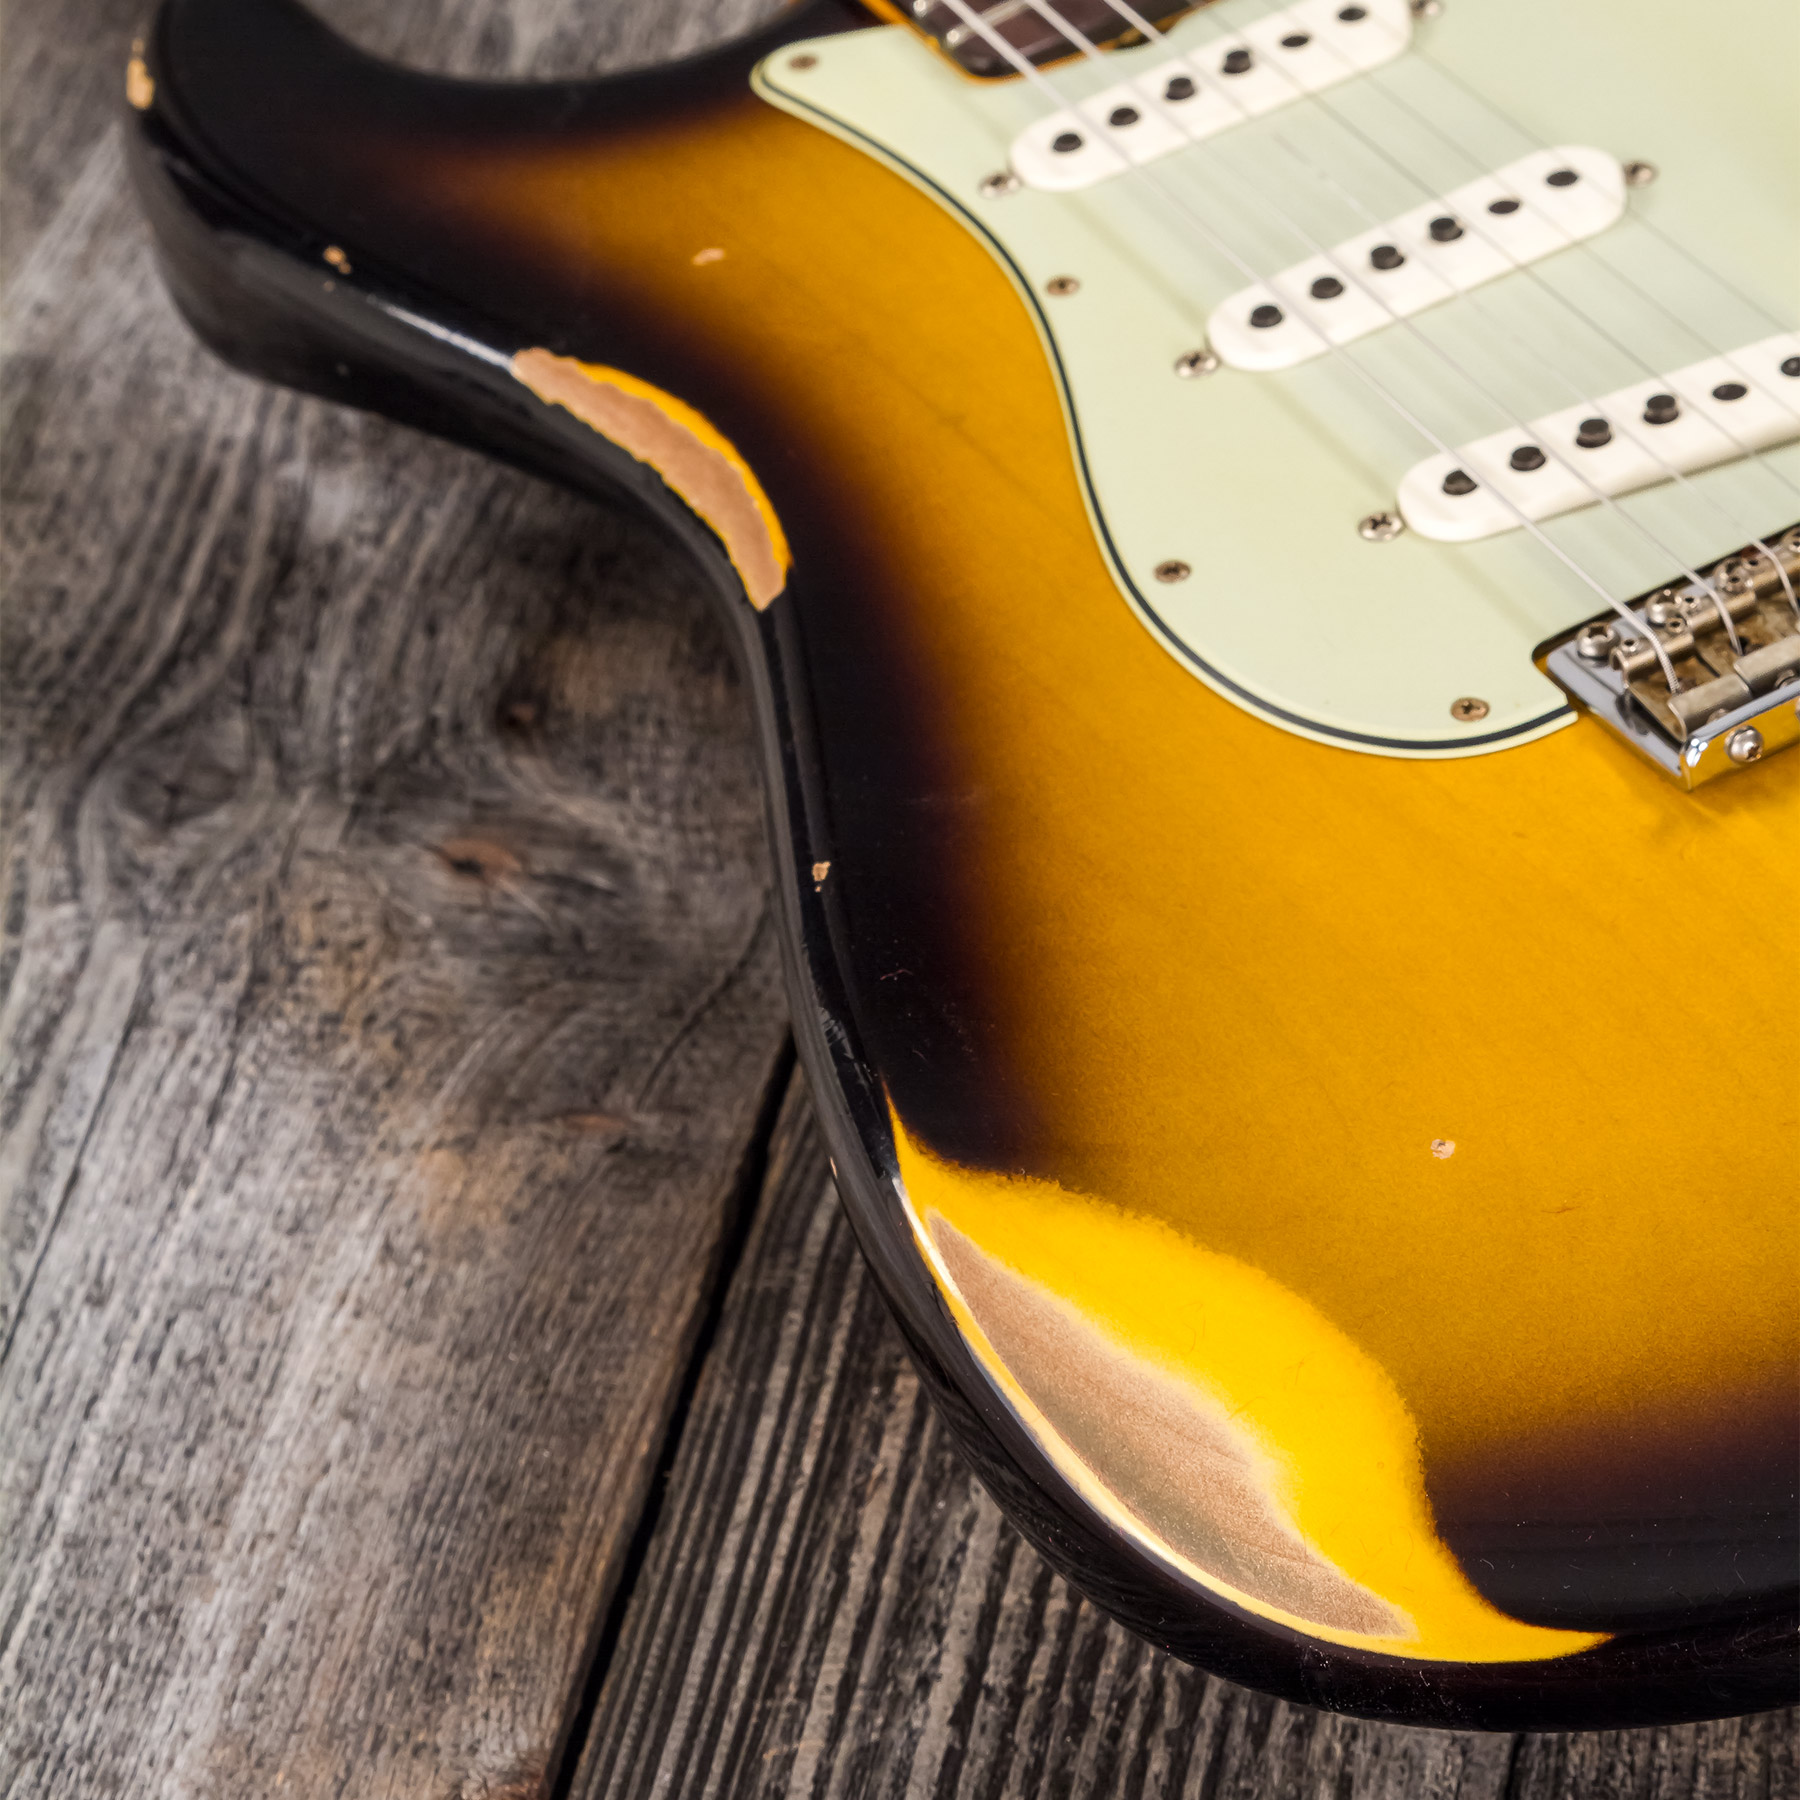 Fender Custom Shop Strat 1959 3s Trem Rw #r117661 - Relic 2-color Sunburst - E-Gitarre in Str-Form - Variation 5